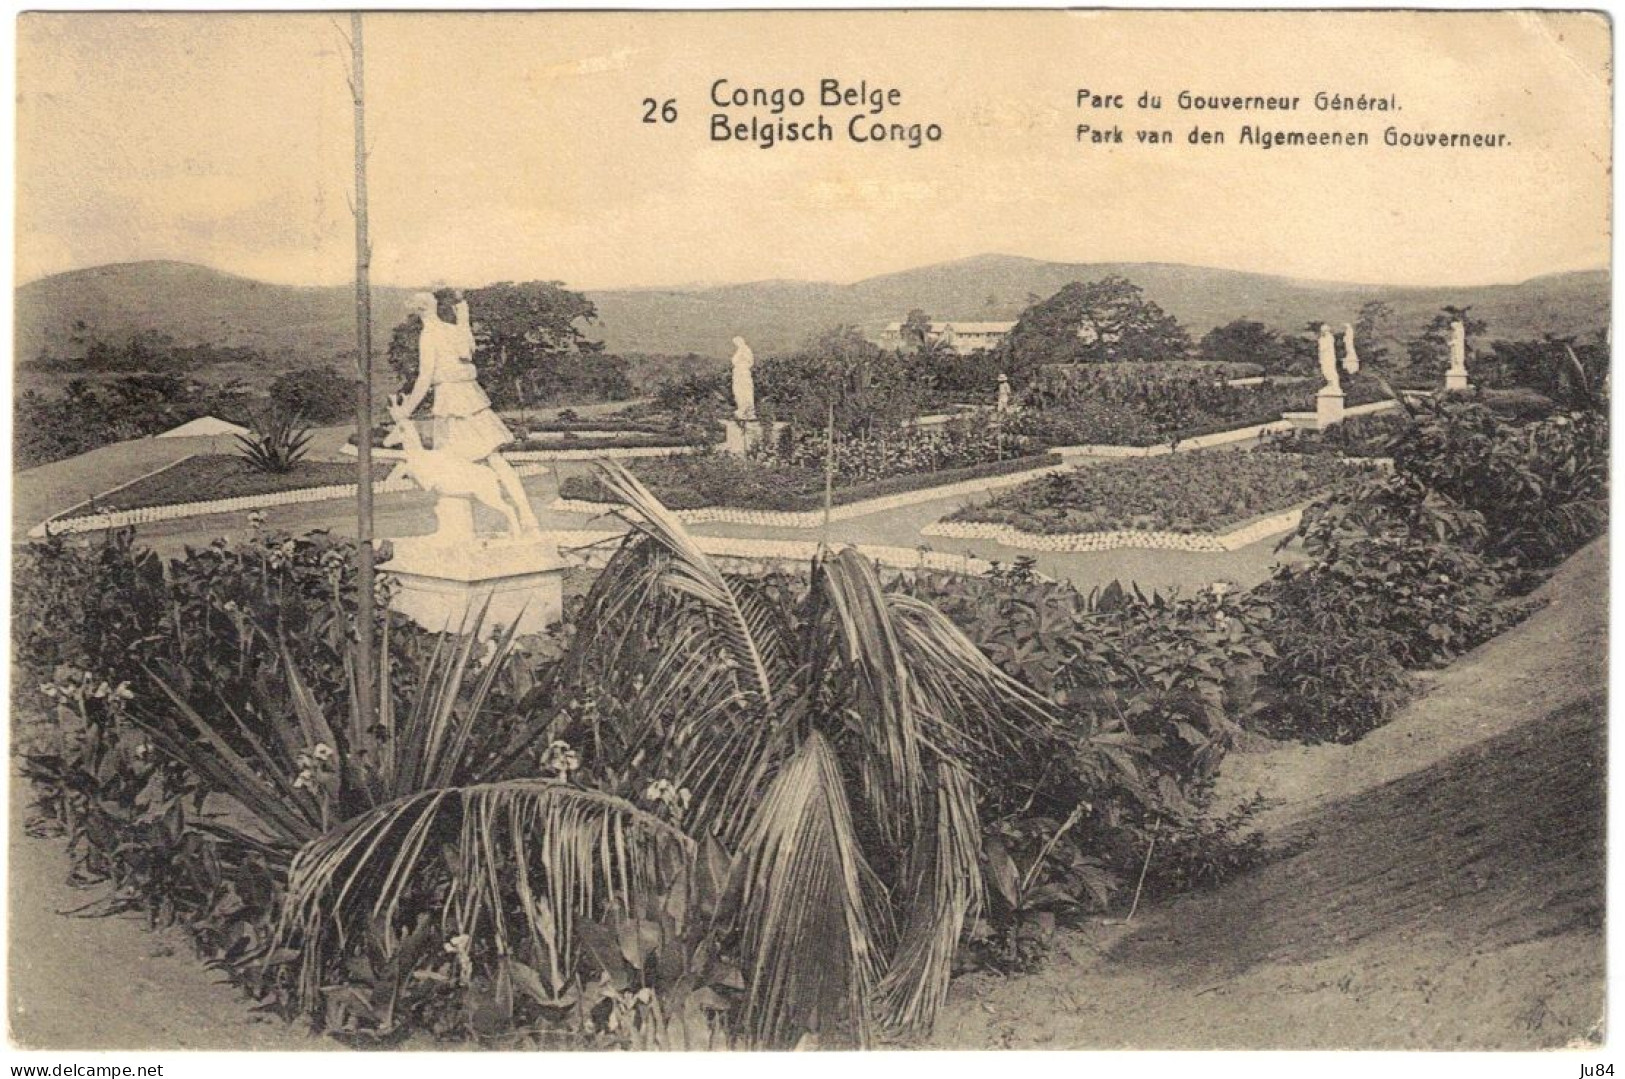 Afrique - Congo - Congo Belge - Parc Du Gouverneur Général - Entier Postal + Compélement D'affranchissement - 1921 - Covers & Documents